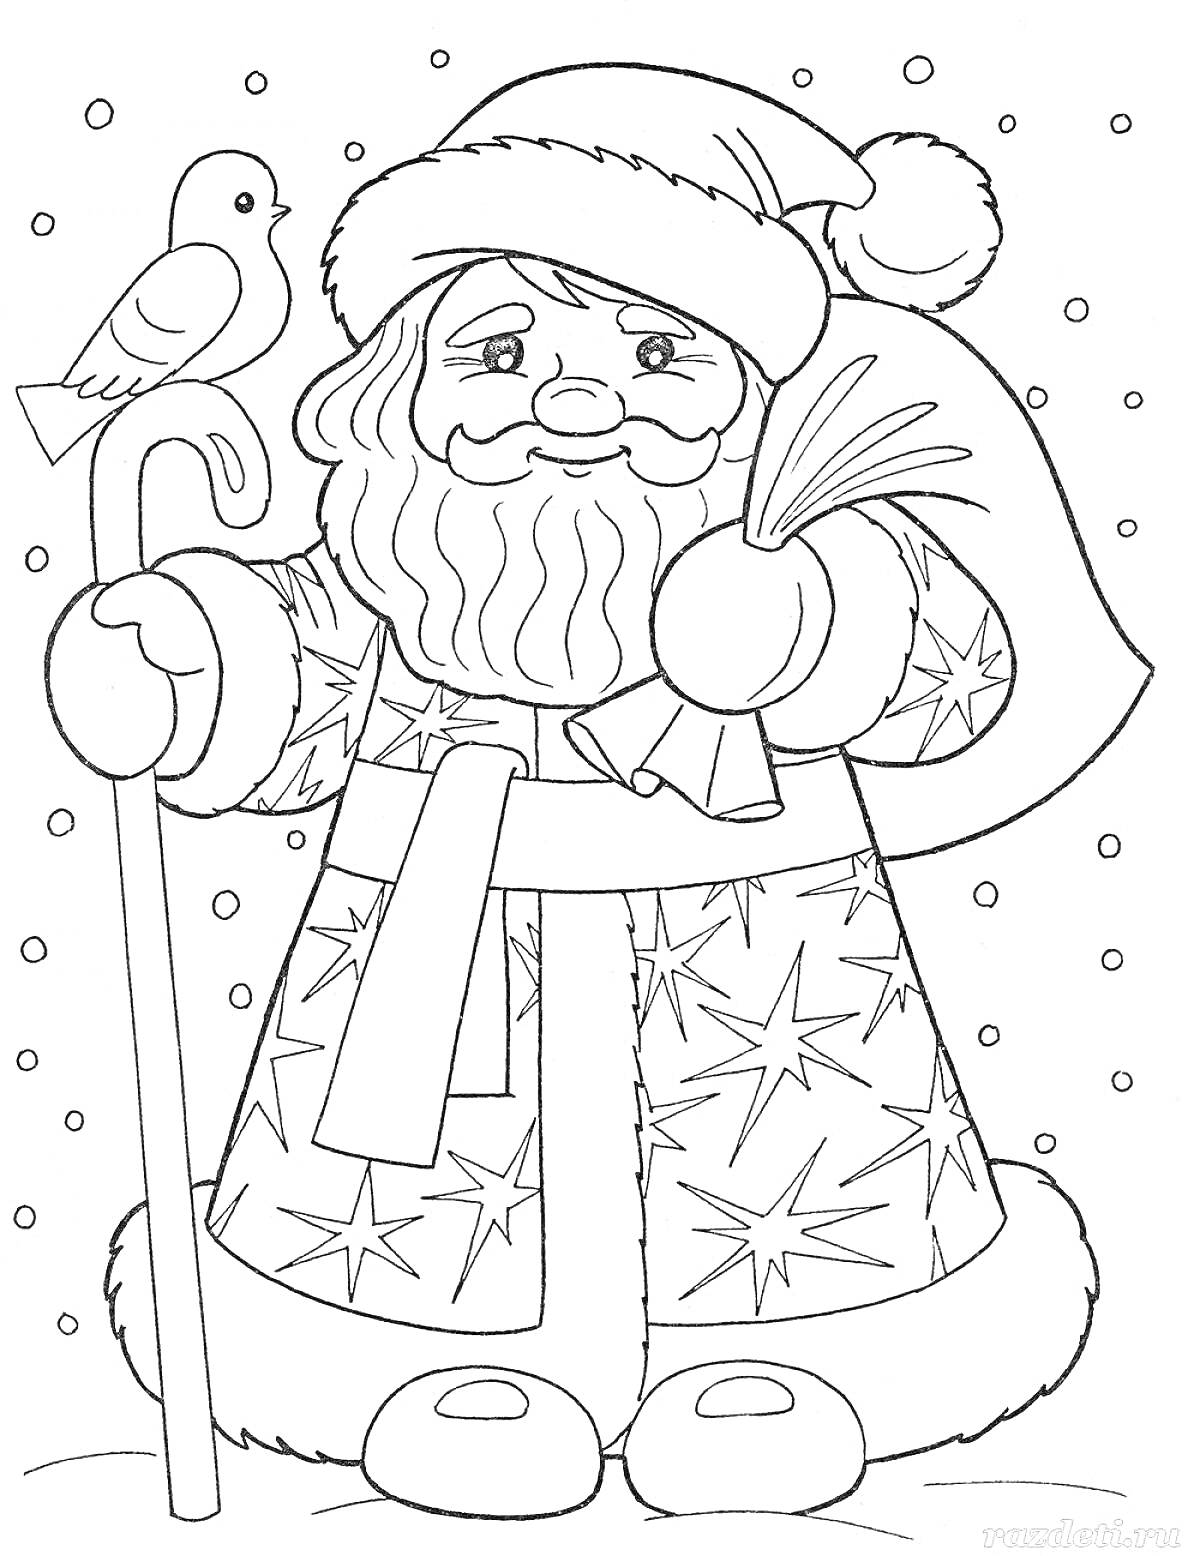 Раскраска Дед Мороз с посохом, мешком подарков и птичкой на руке, снег